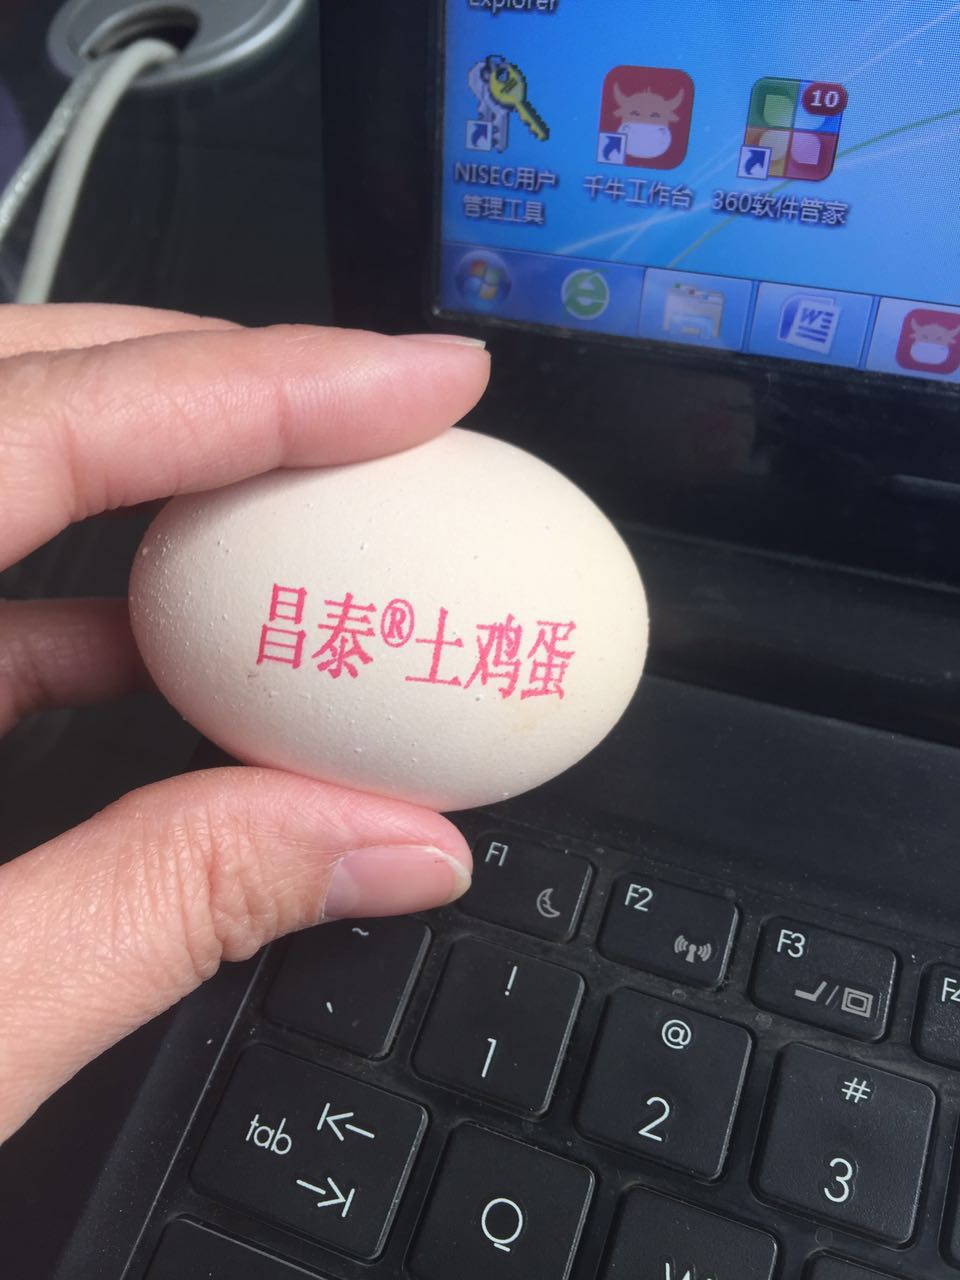 保定鸡蛋喷码机 全自动鸡蛋喷码机 商标鸡蛋打码机厂家批发